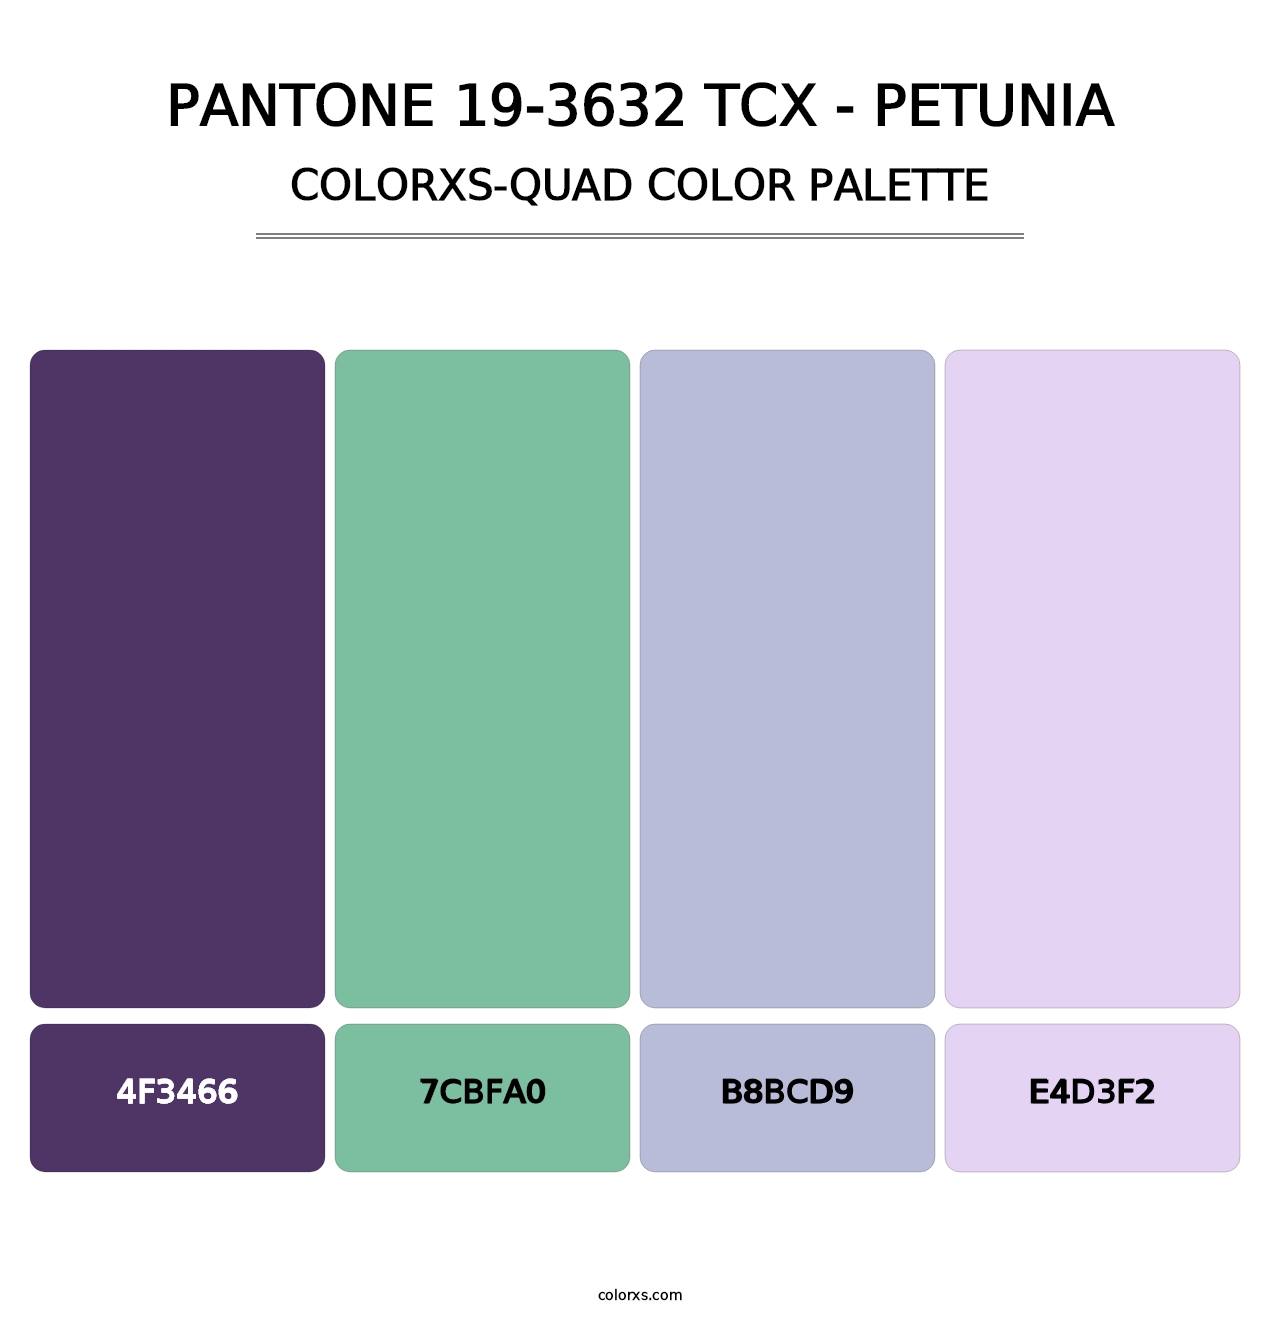 PANTONE 19-3632 TCX - Petunia - Colorxs Quad Palette